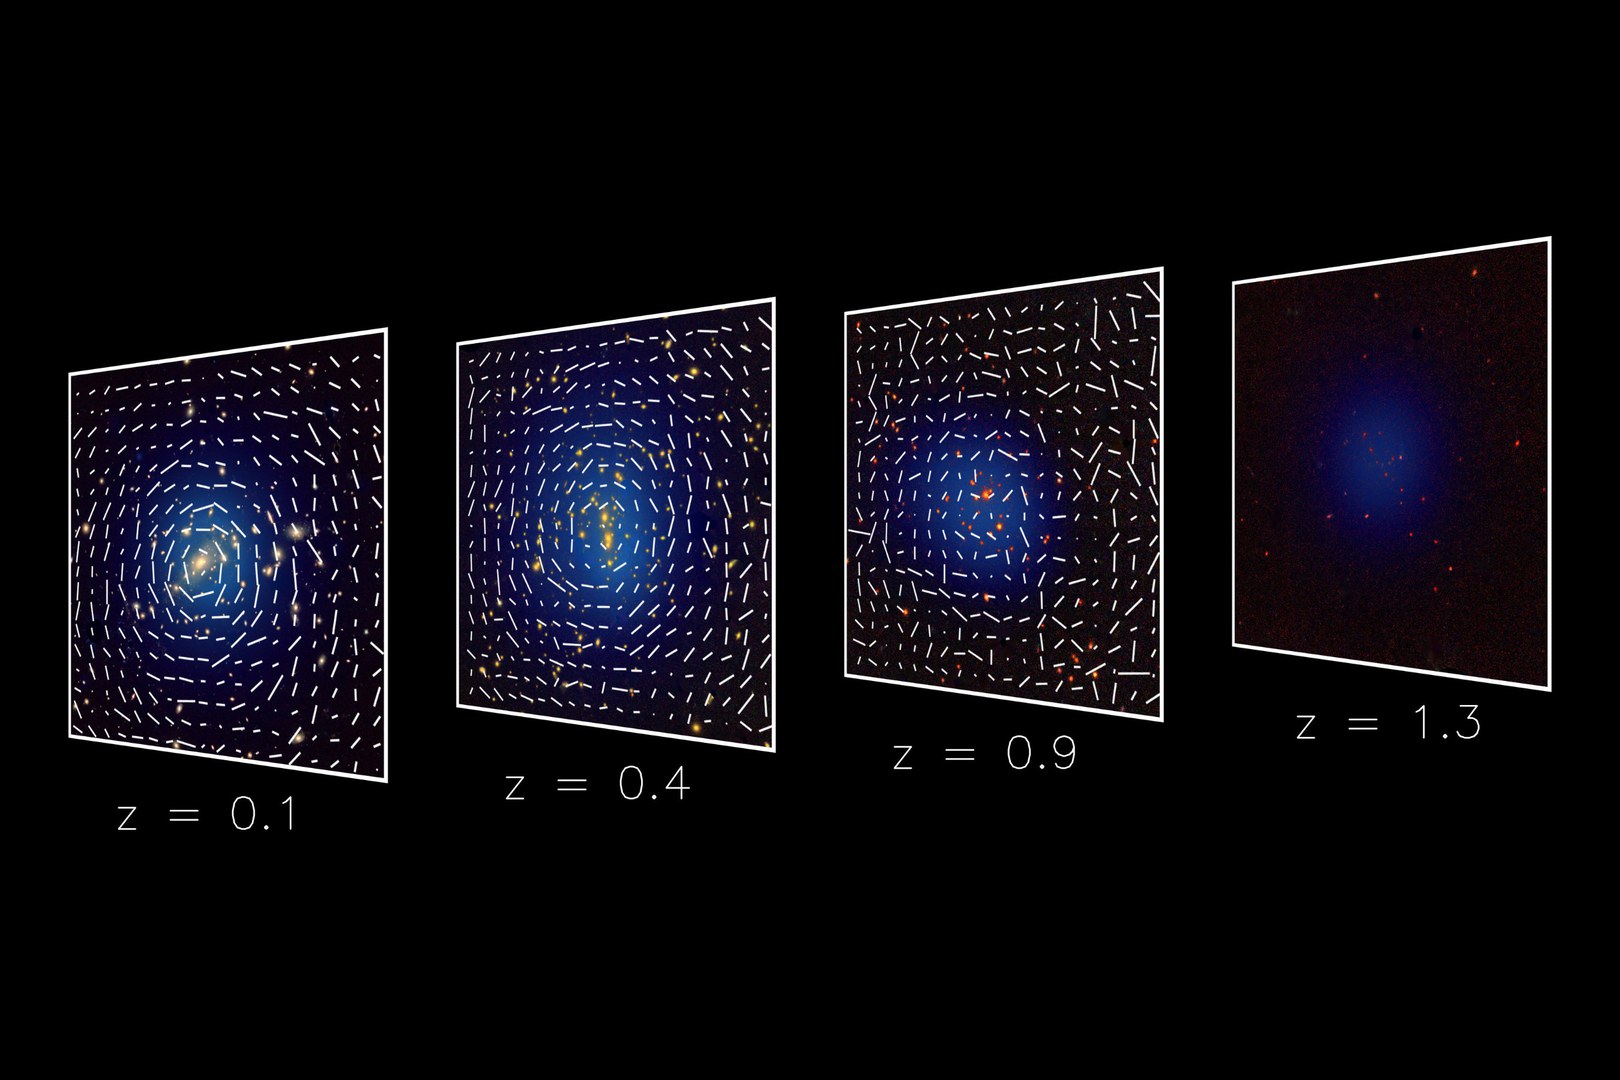 Galaxien in Richtung von vier Galaxienhaufen in unterschiedlichen Entfernungen.